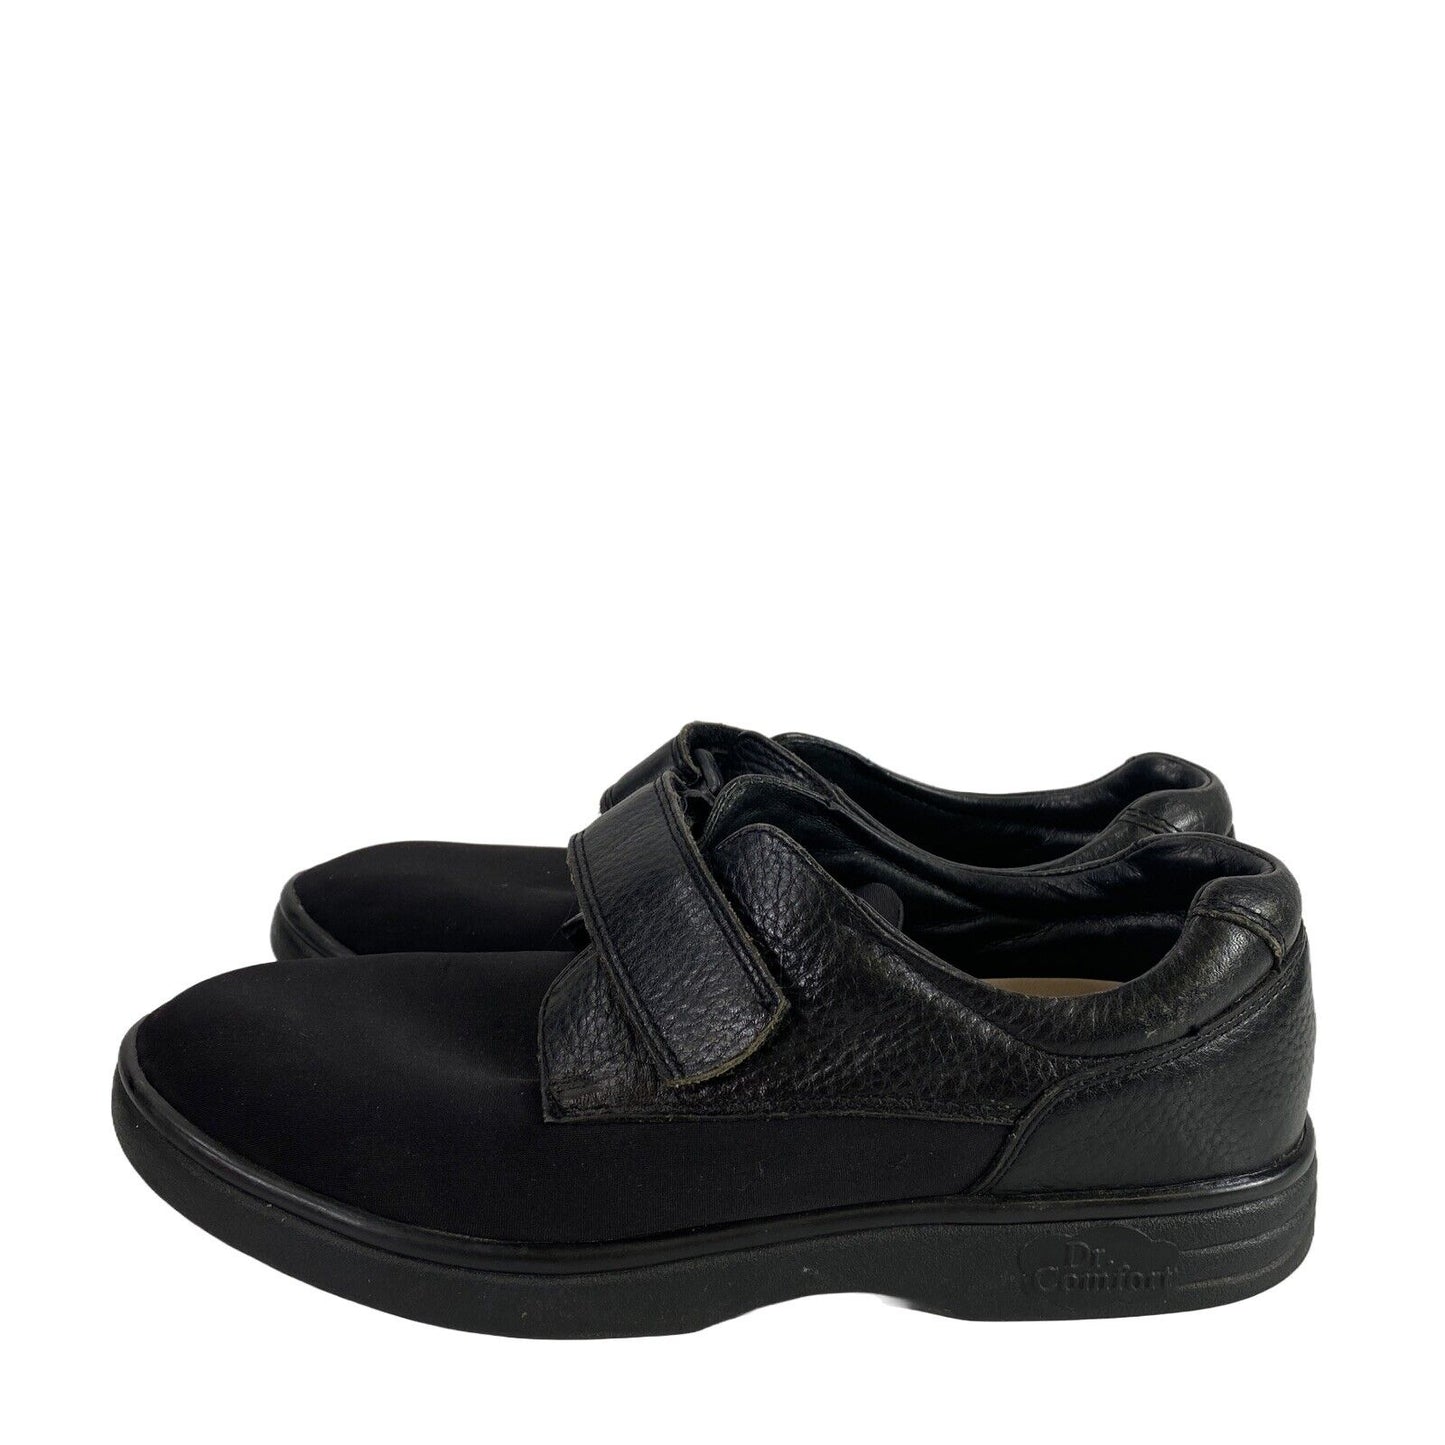 Dr. Comfort Women's Black Leather Annie Comfort Shoes - 9.5M